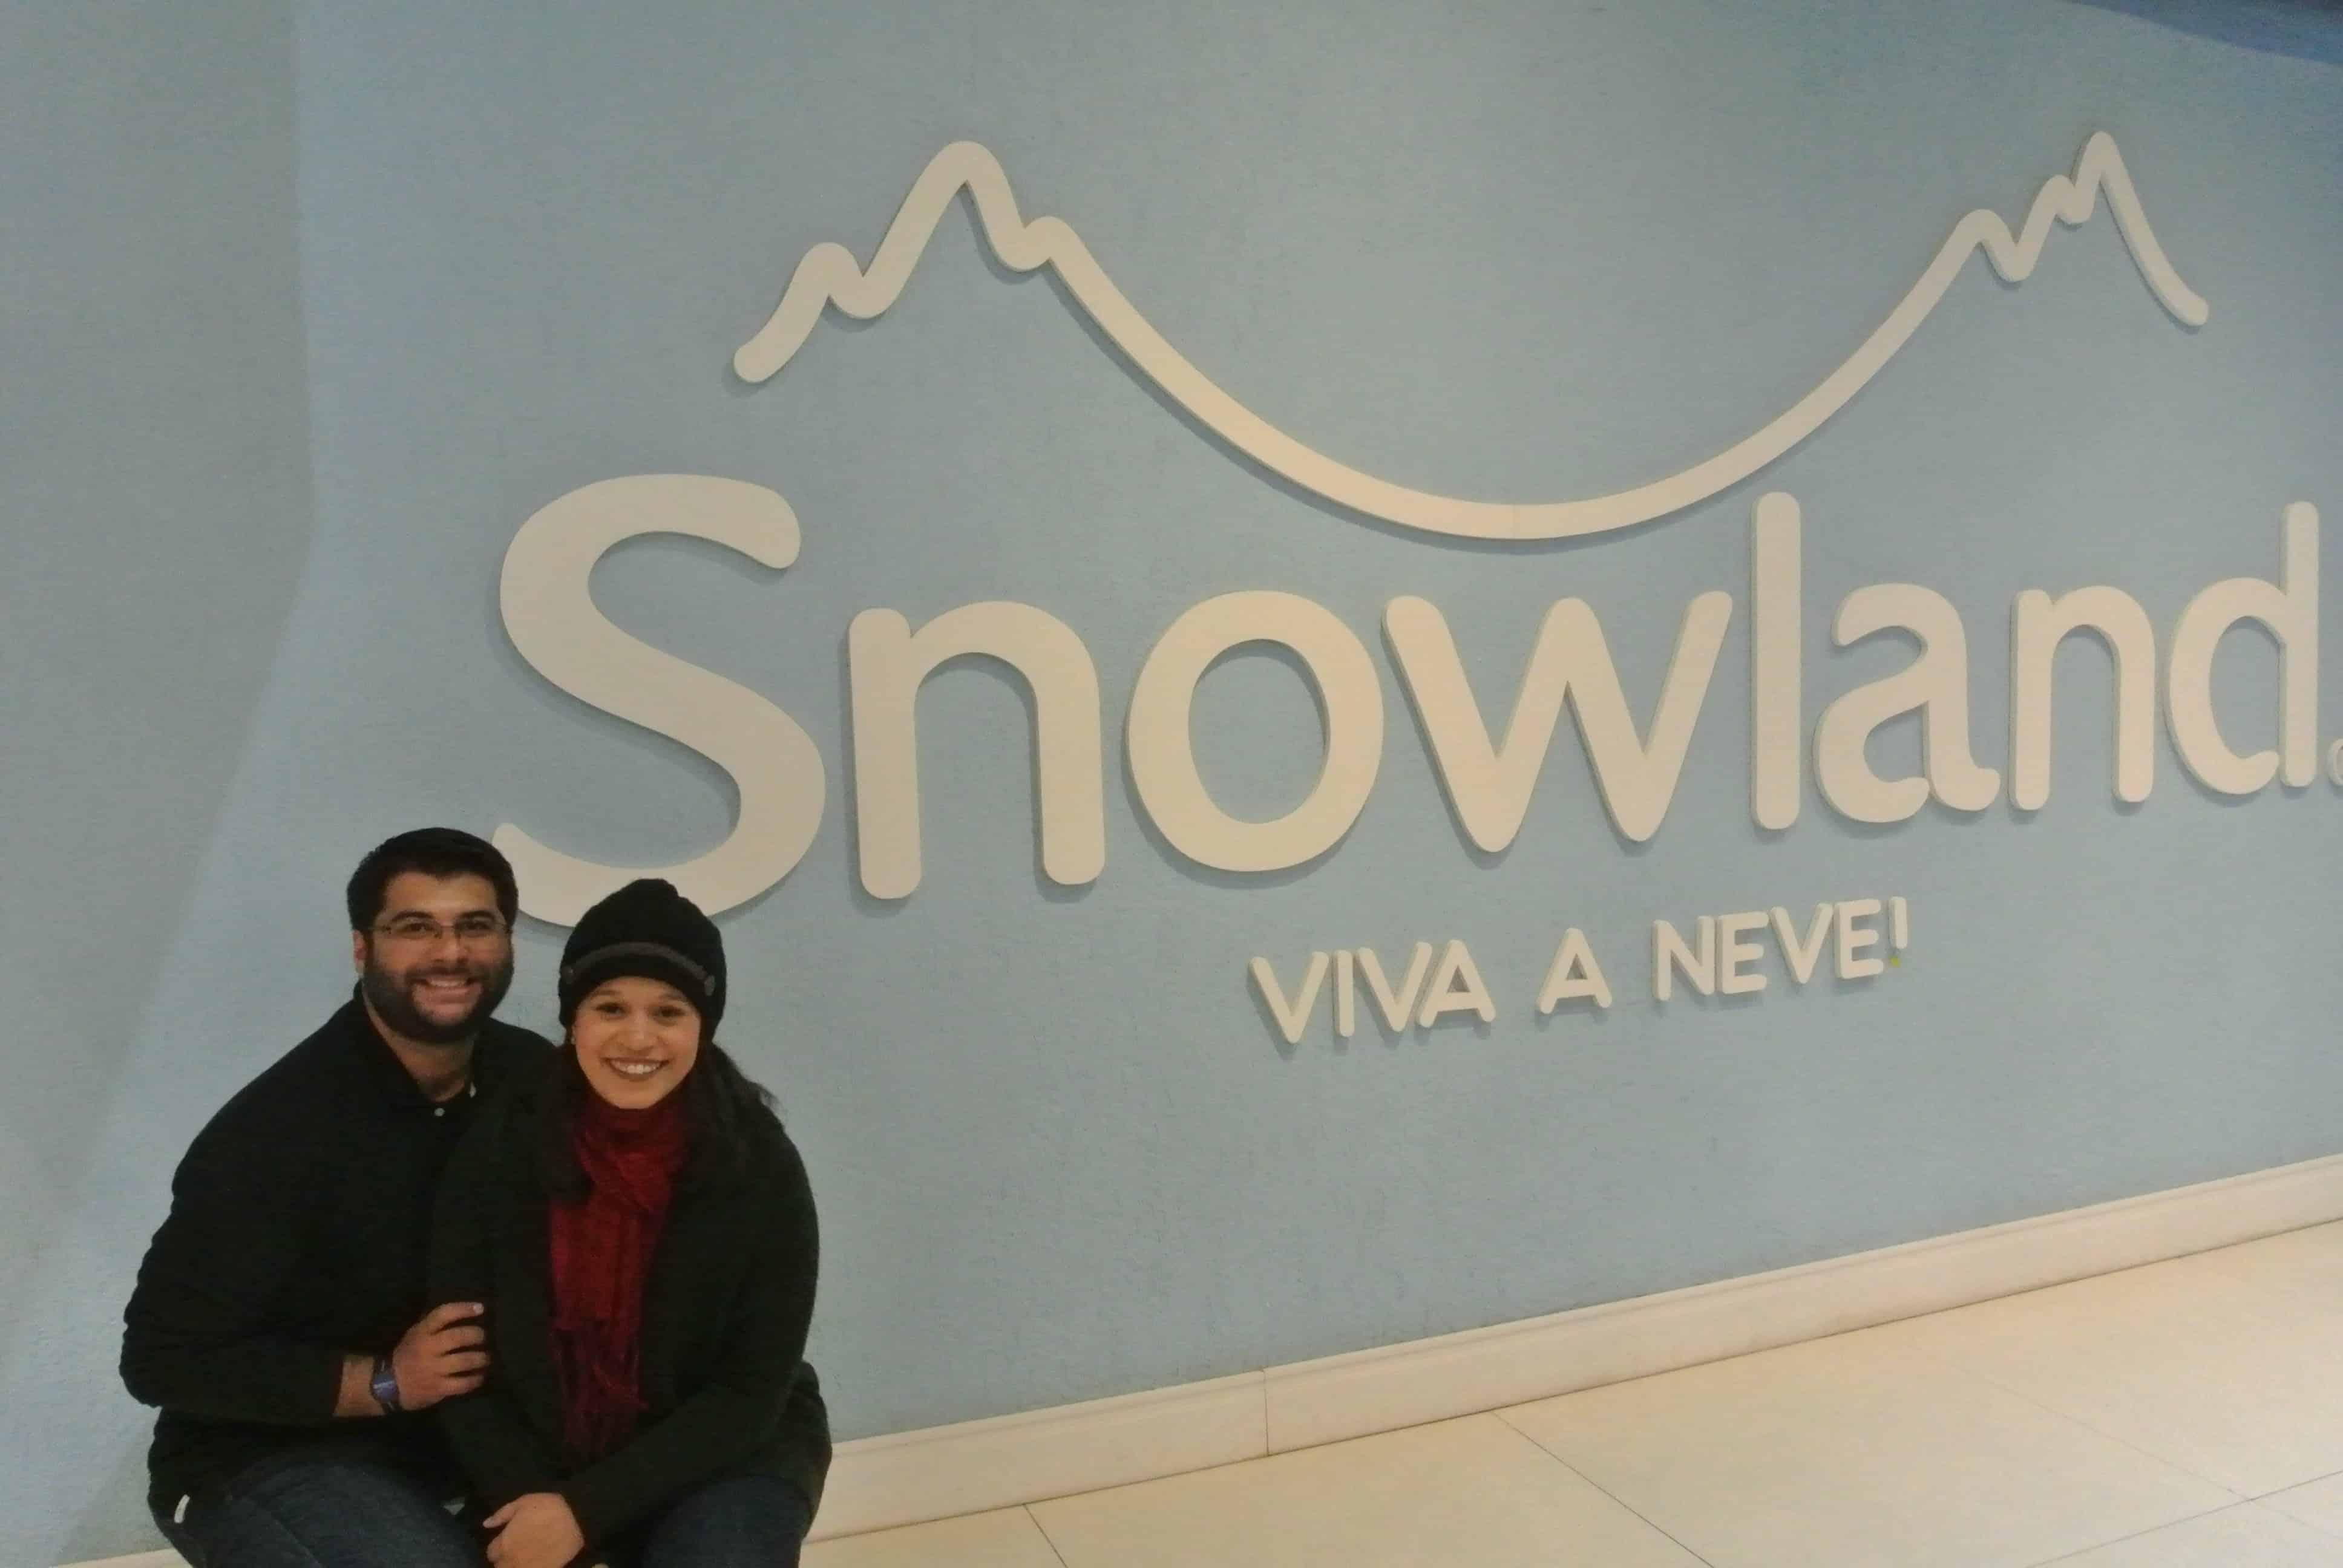 Snowland Viva a Neve!